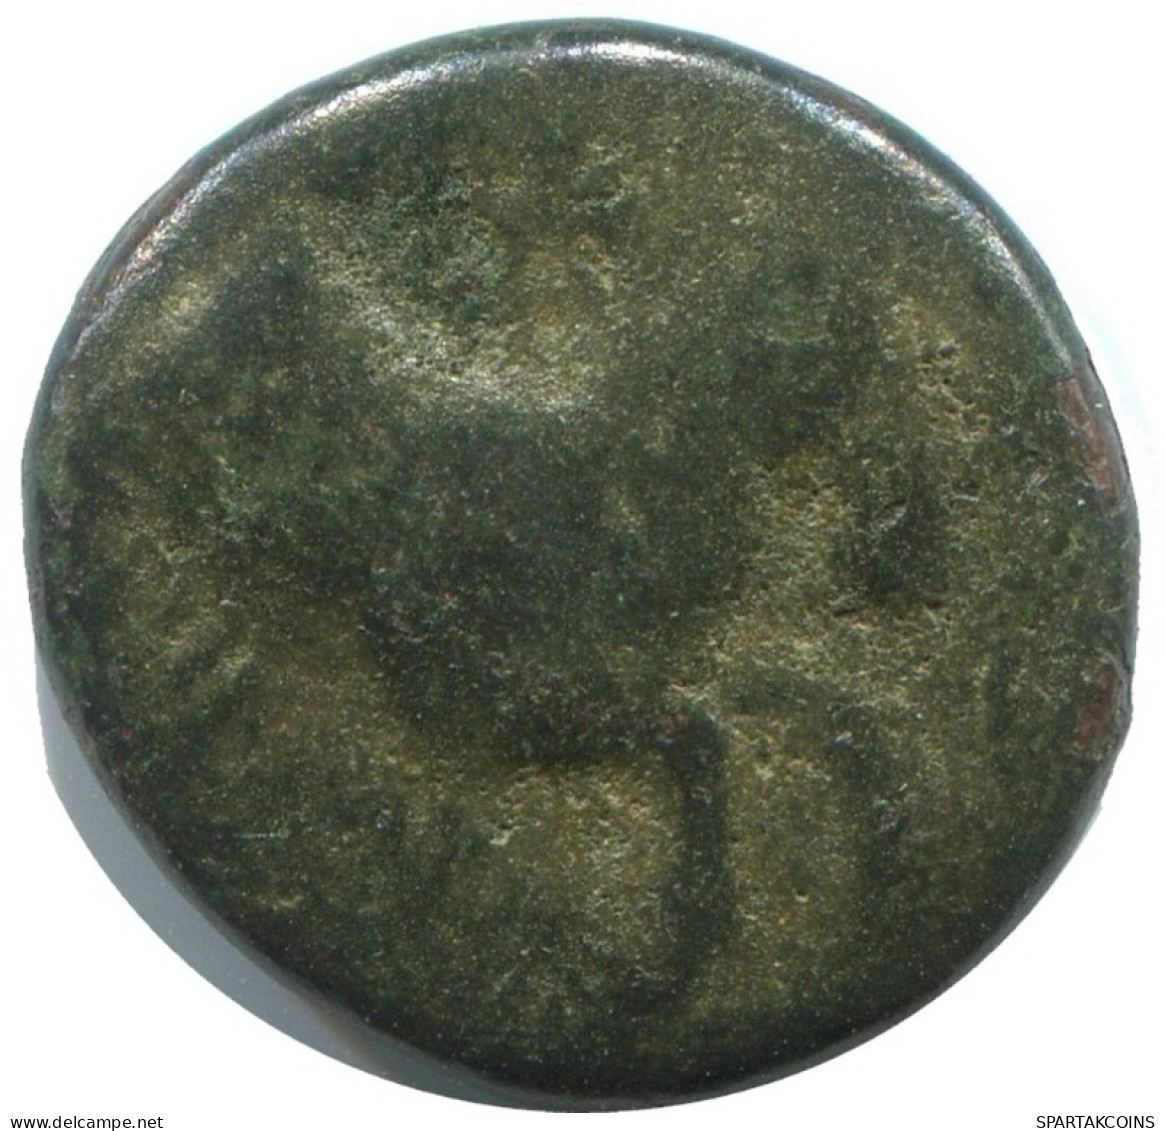 AIOLIS KYME HORSE SKYPHOS Antike GRIECHISCHE Münze 3.8g/16mm #AG042.12.D.A - Griechische Münzen